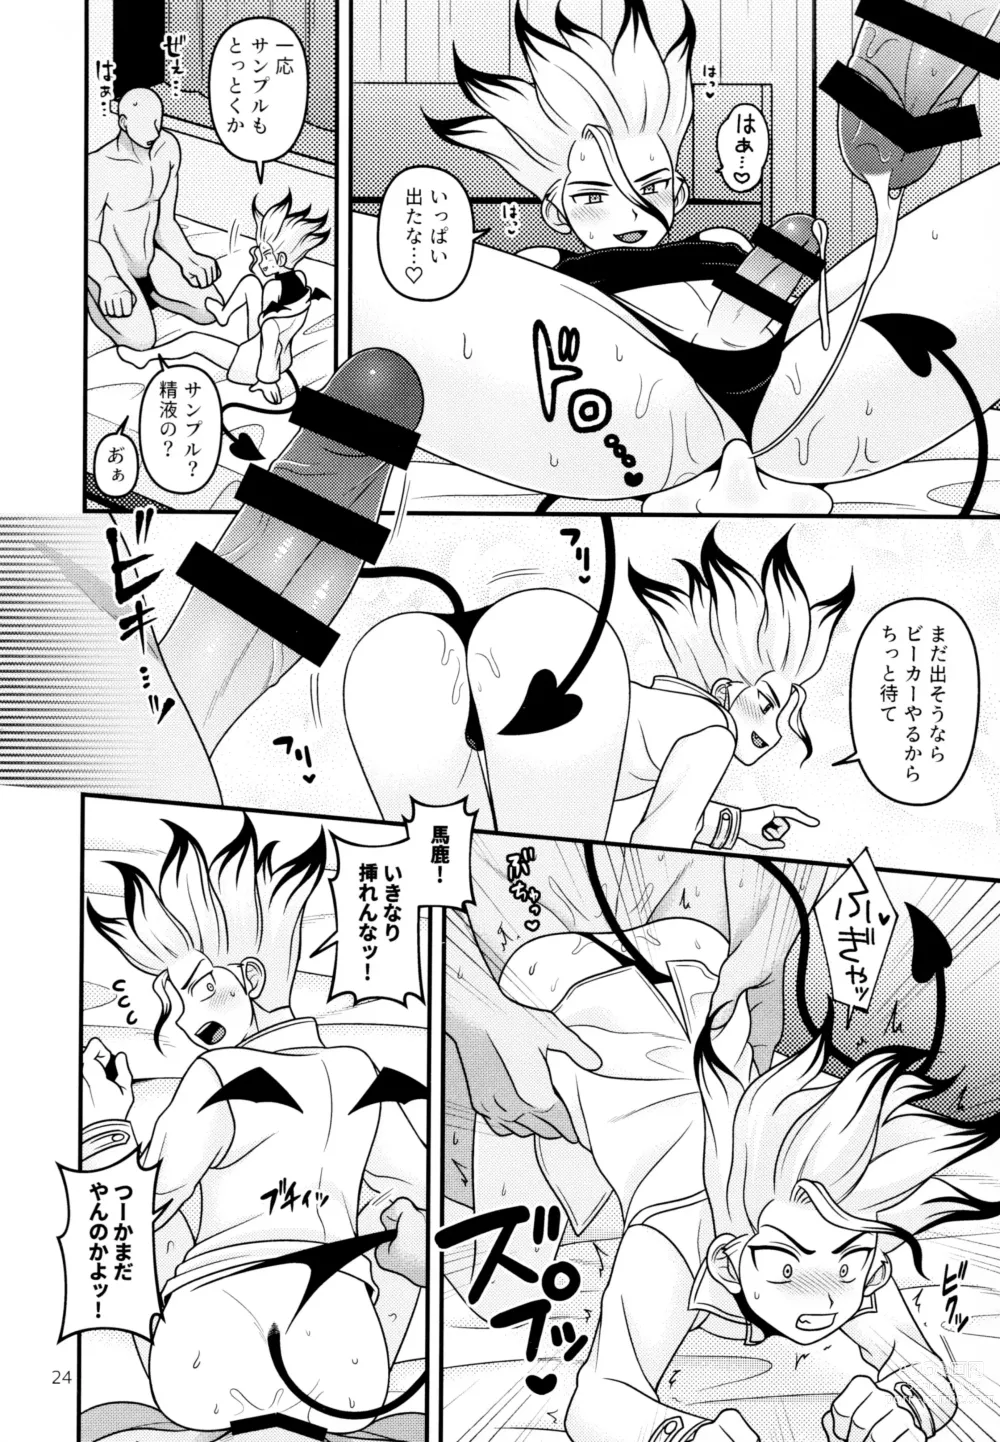 Page 24 of doujinshi Hakui no Inma-sama